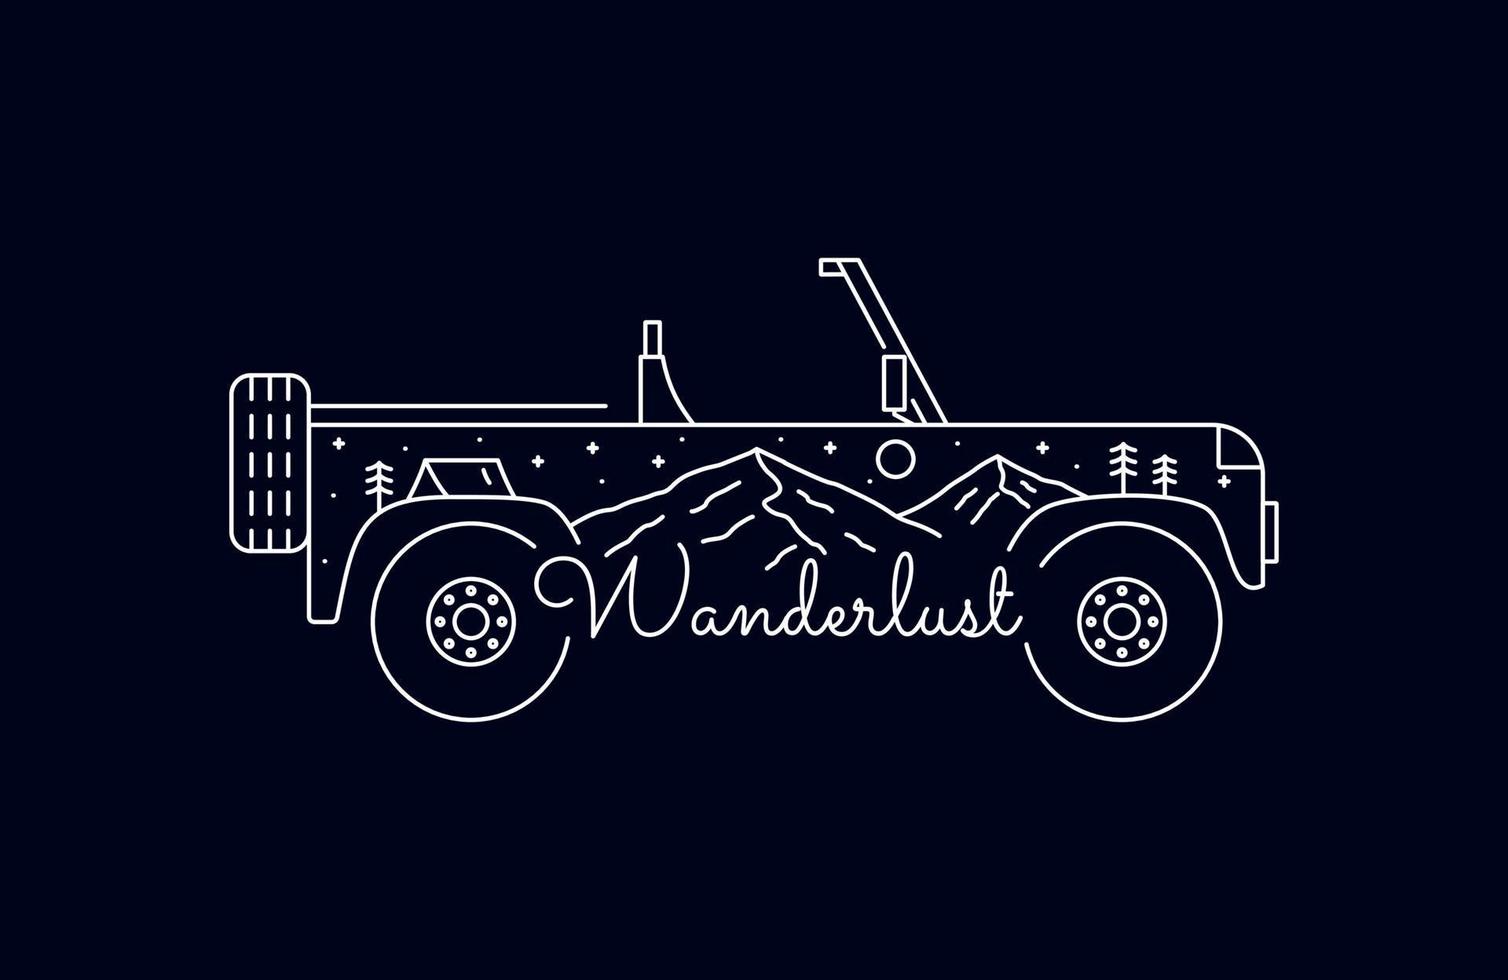 Wanderlust and adventure car nature wildlife in monoline art vector